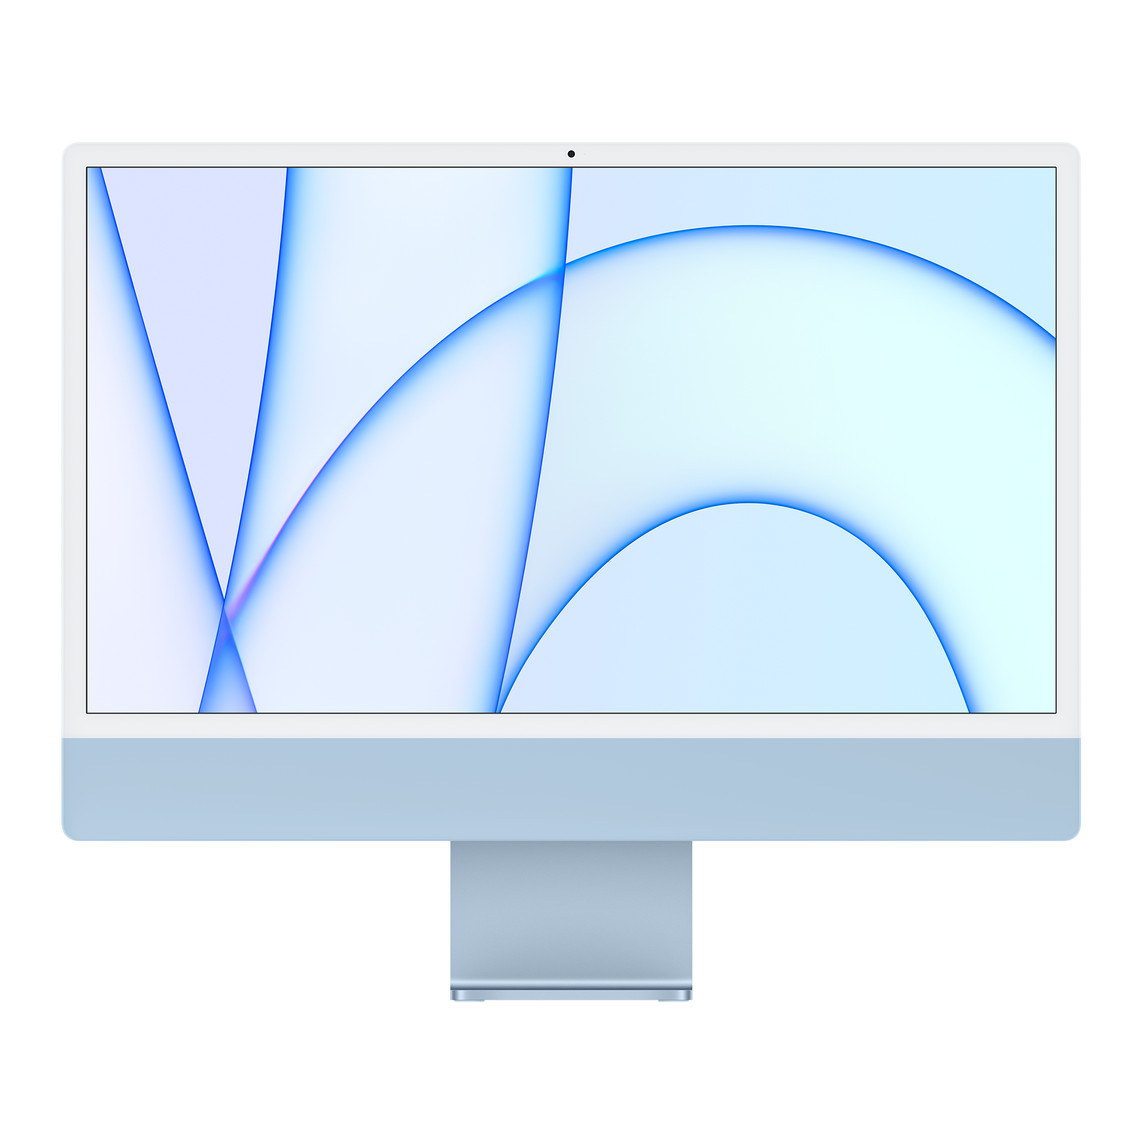 iMac 的正面外观，展示白色显示屏边框、蓝色外壳和铝金属底座。